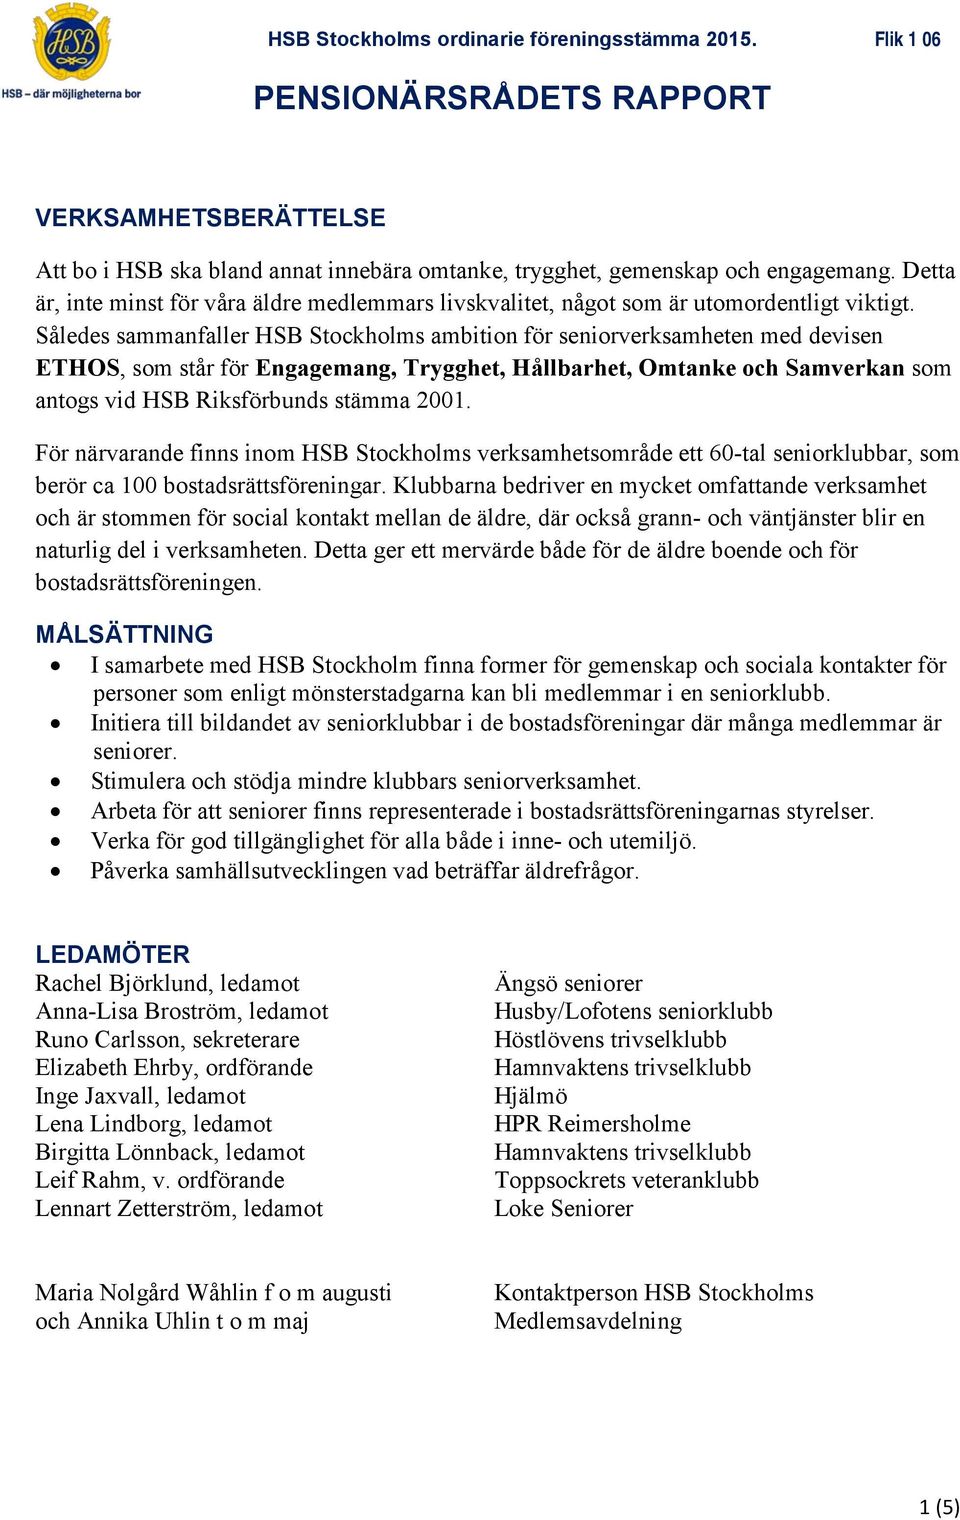 Således sammanfaller HSB Stockholms ambition för seniorverksamheten med devisen ETHOS, som står för Engagemang, Trygghet, Hållbarhet, Omtanke och Samverkan som antogs vid HSB Riksförbunds stämma 2001.